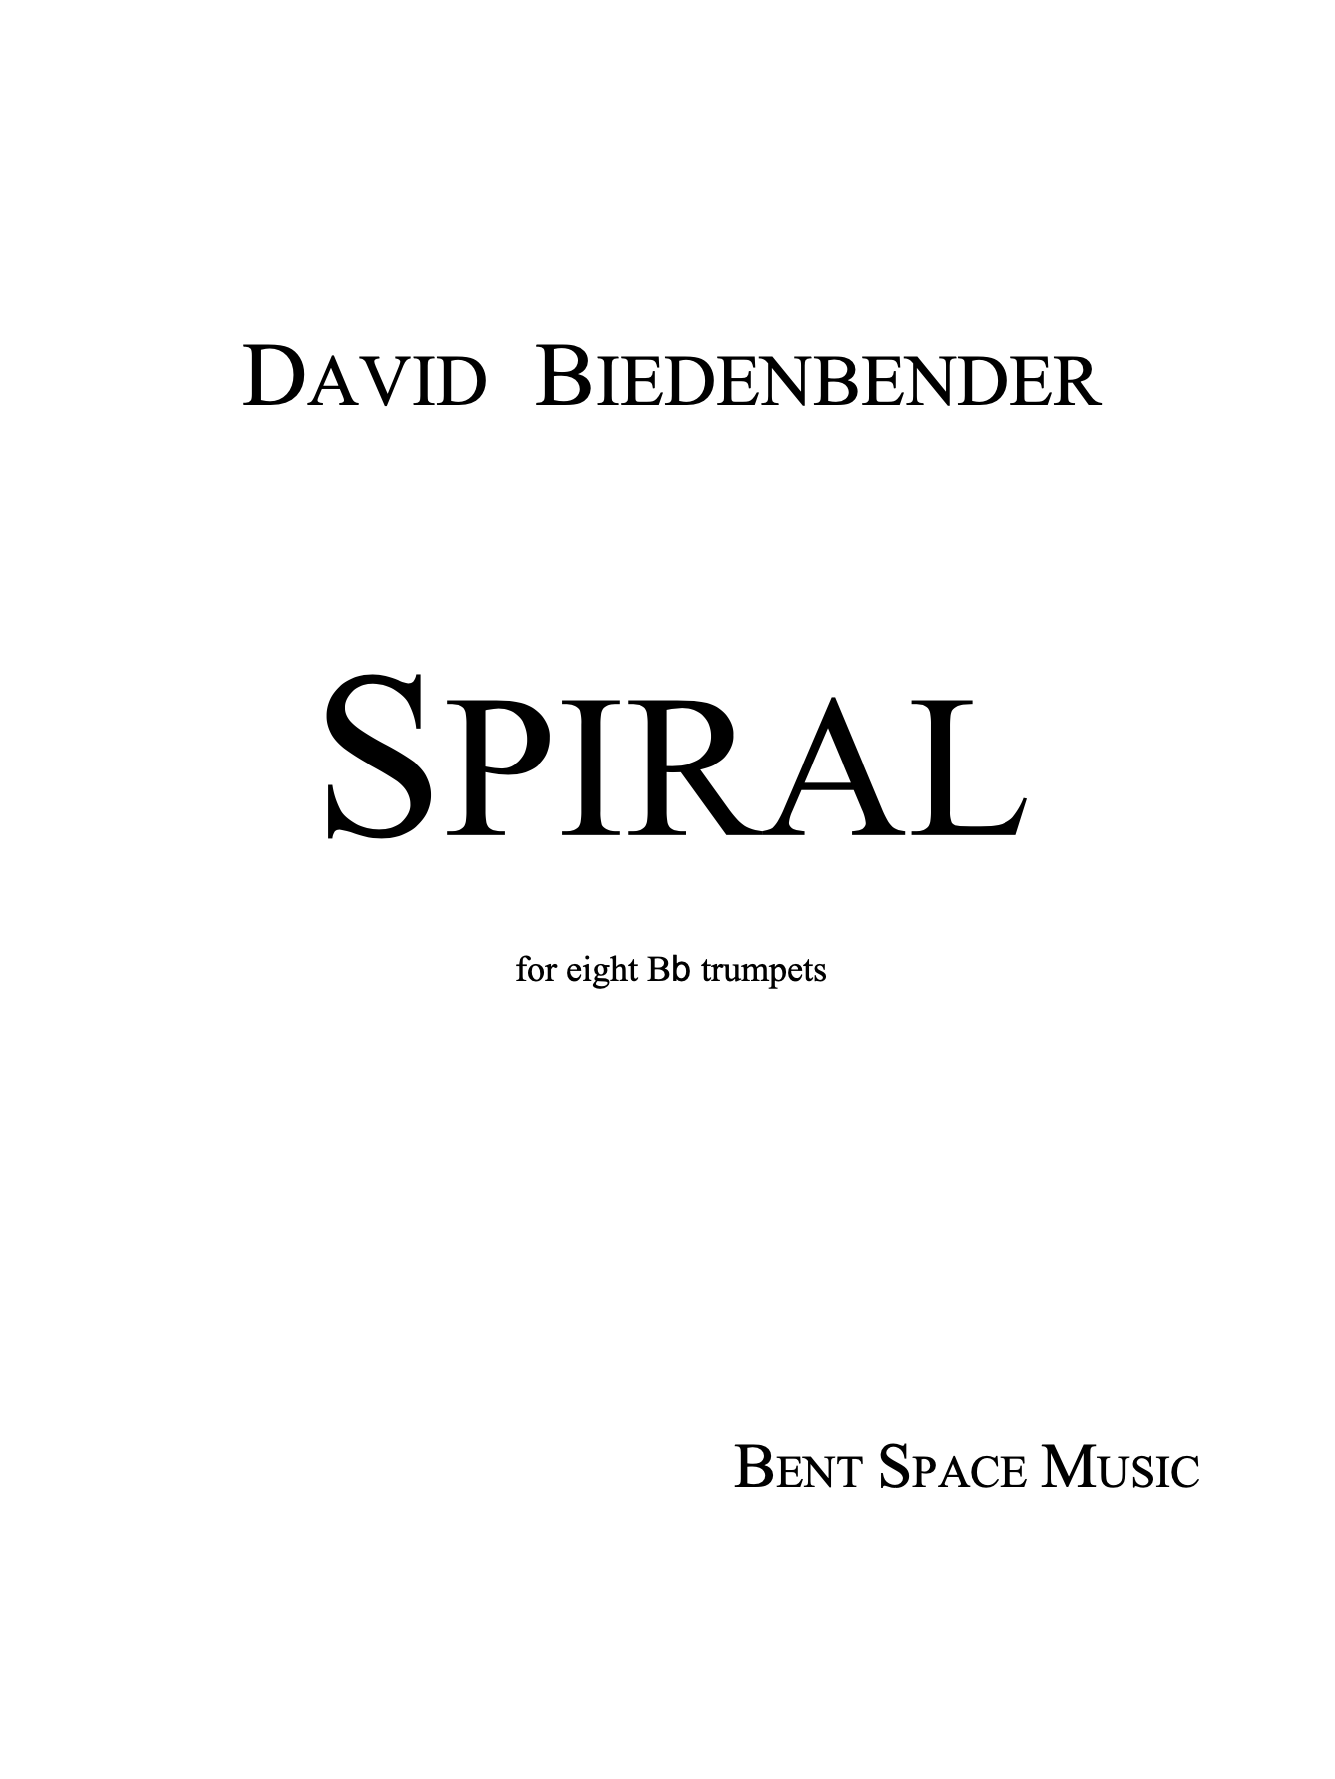 Spiral (Trumpet Ensemble) by David Biedenbender